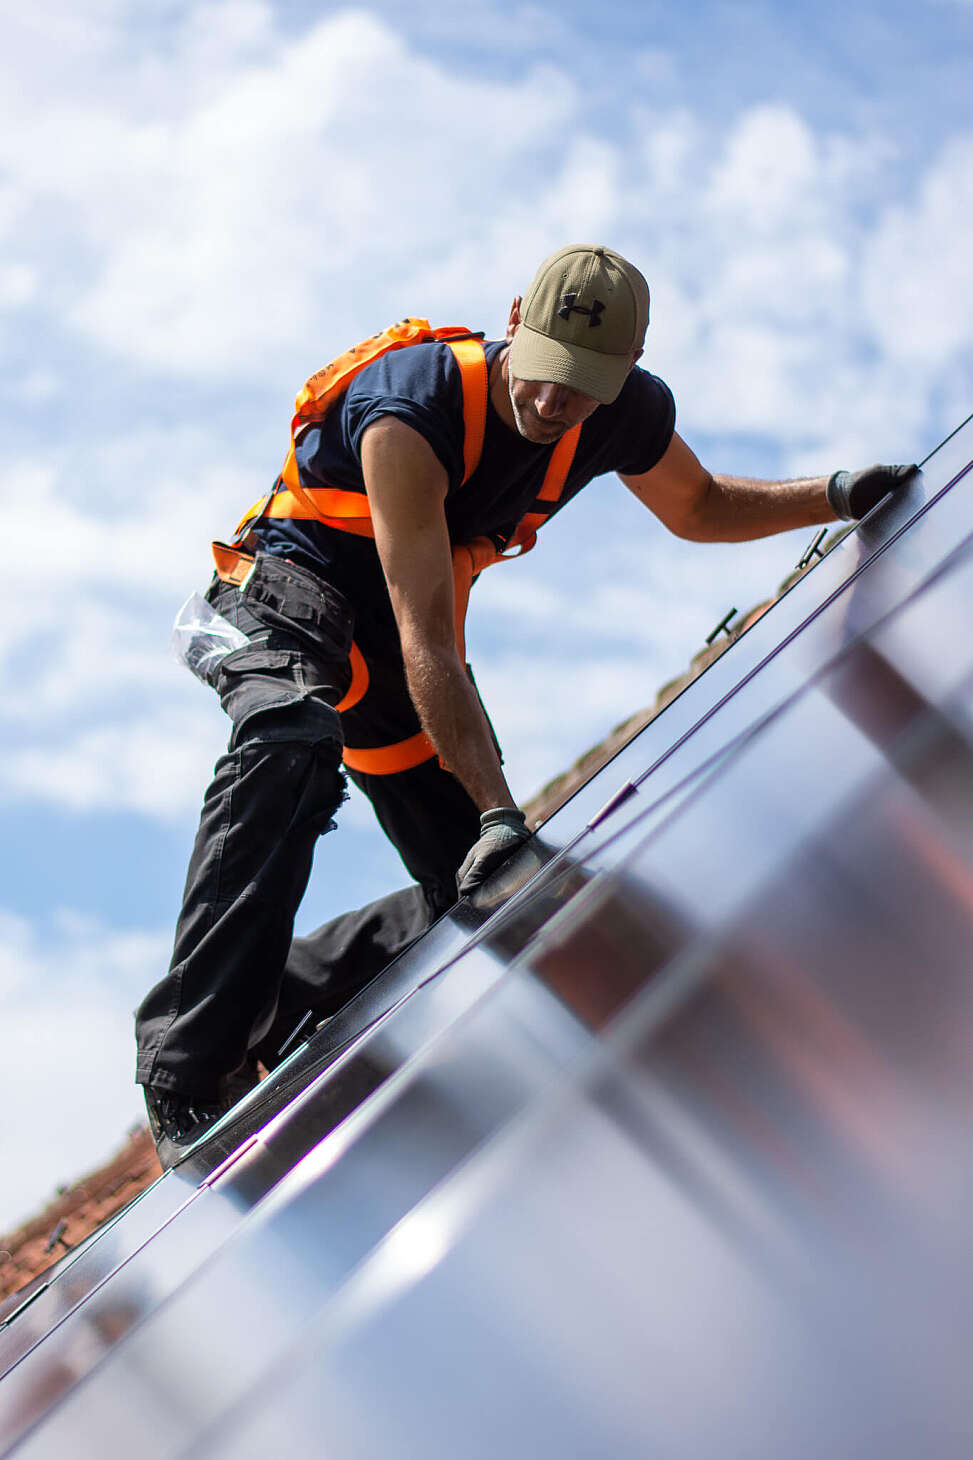 Installateur op dak die zonnepanelen installeert